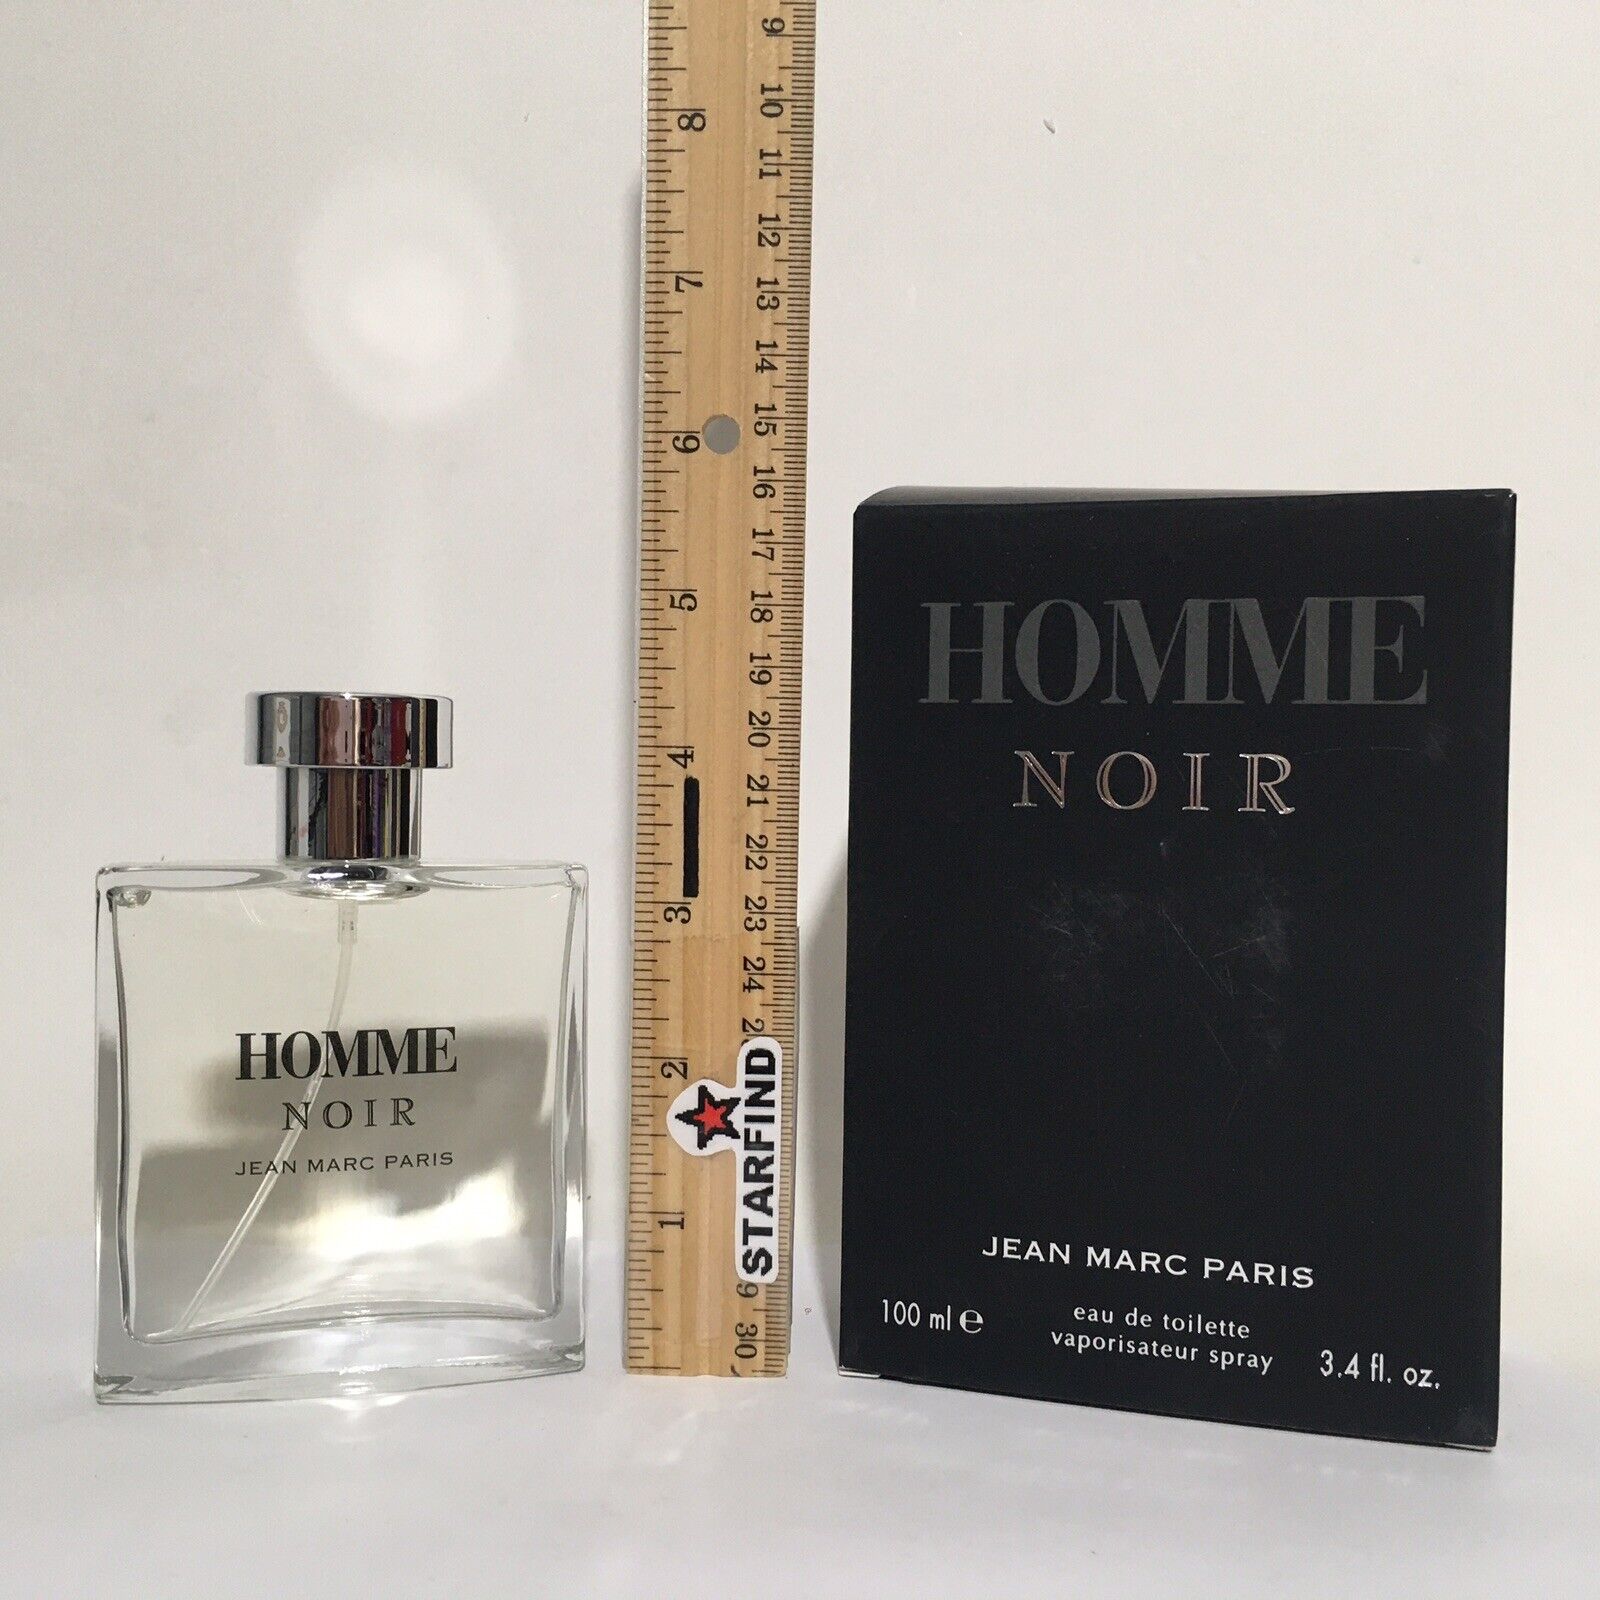 Jean Marc Paris Homme Noir Eau de Toilette 3.4 fl. oz